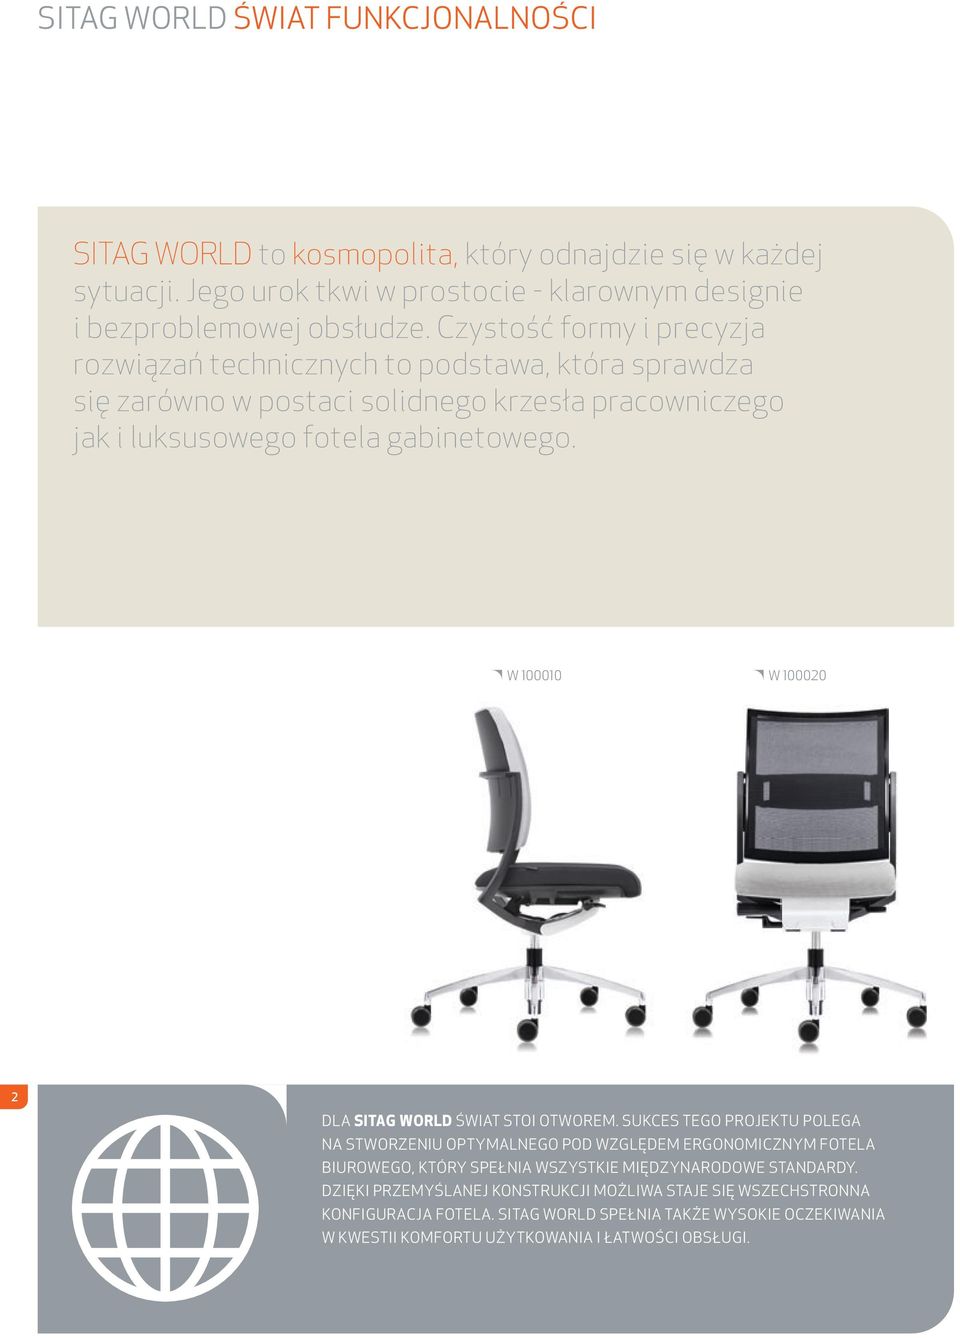 zystość formy i precyzja rozwiązań technicznych to podstawa, która sprawdza się zarówno w postaci solidnego krzesła pracowniczego jak i luksusowego fotela